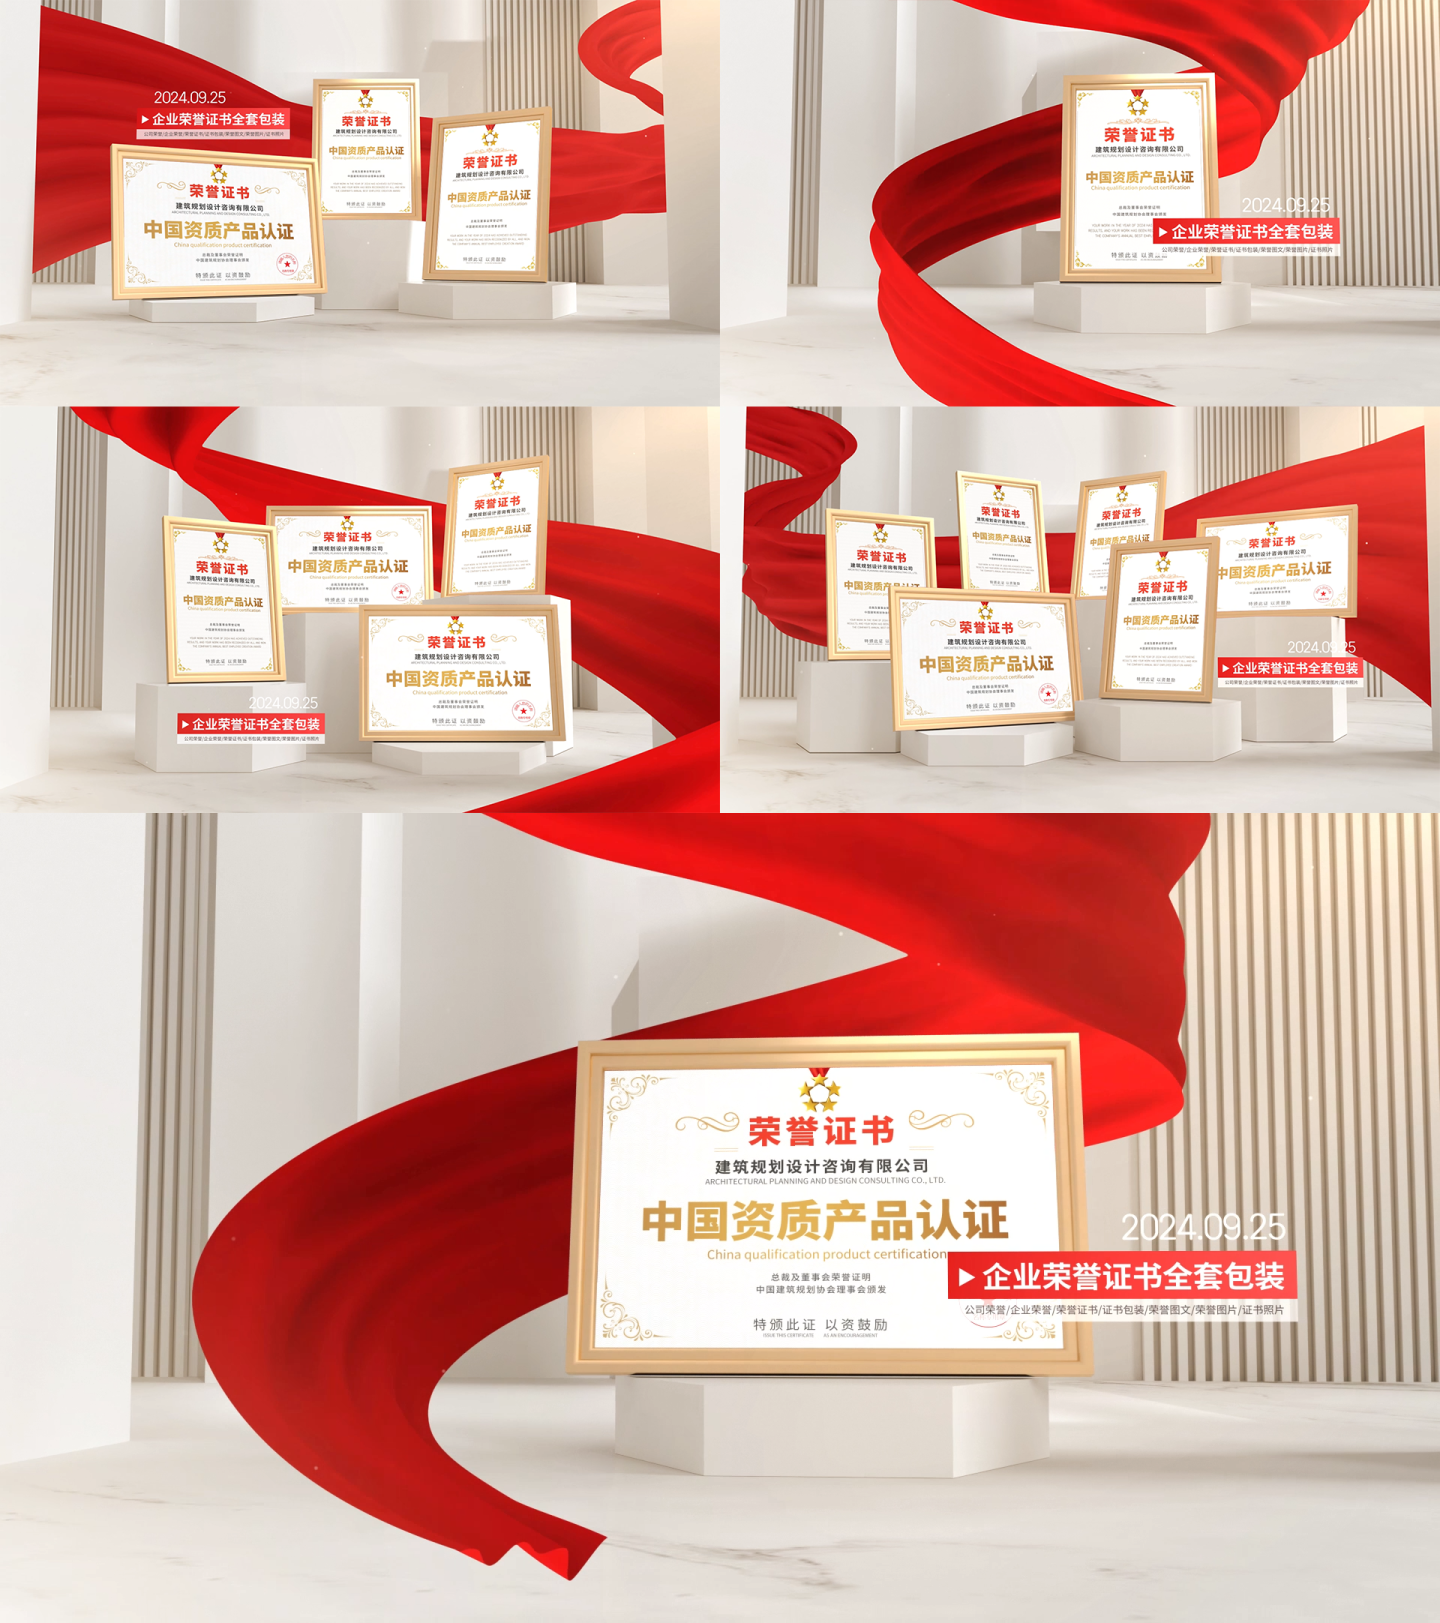 暖白色调红绸专利荣誉证书奖状奖牌展示模板